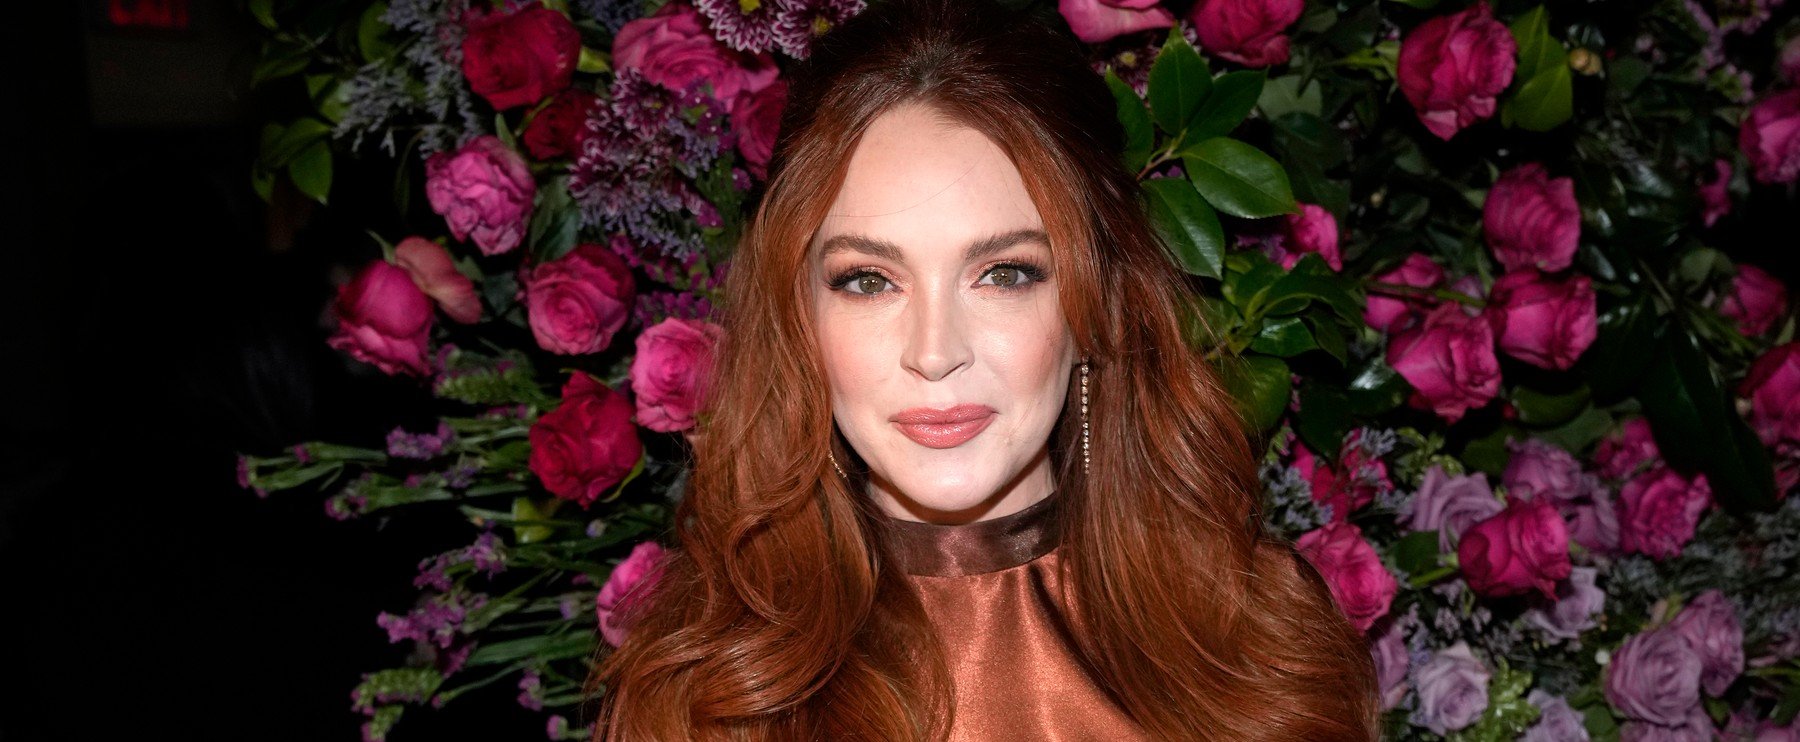 Lindsay Lohanből dögös kismama lett a botrányos évek után